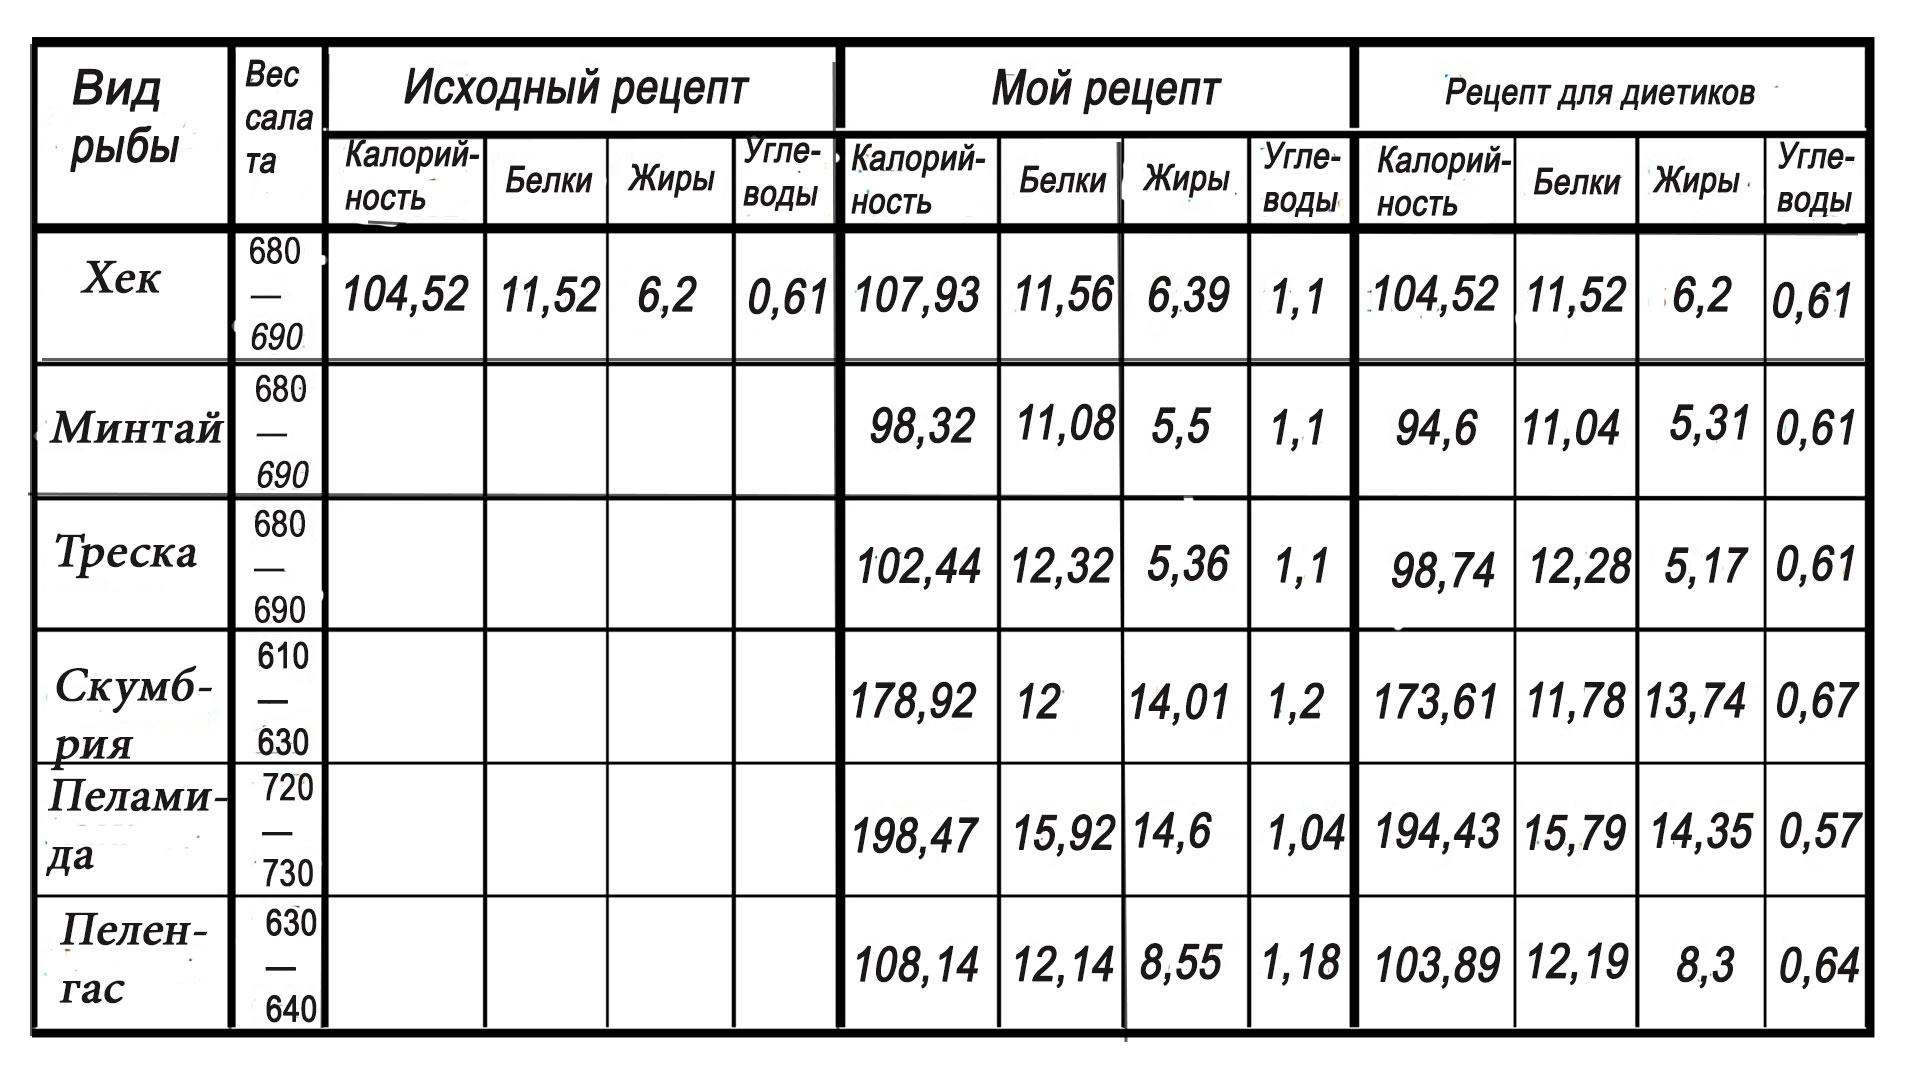 Таблица КБЖУ салата из хек, минтая, скумбрии, трески, пеламиды и пеленгаса